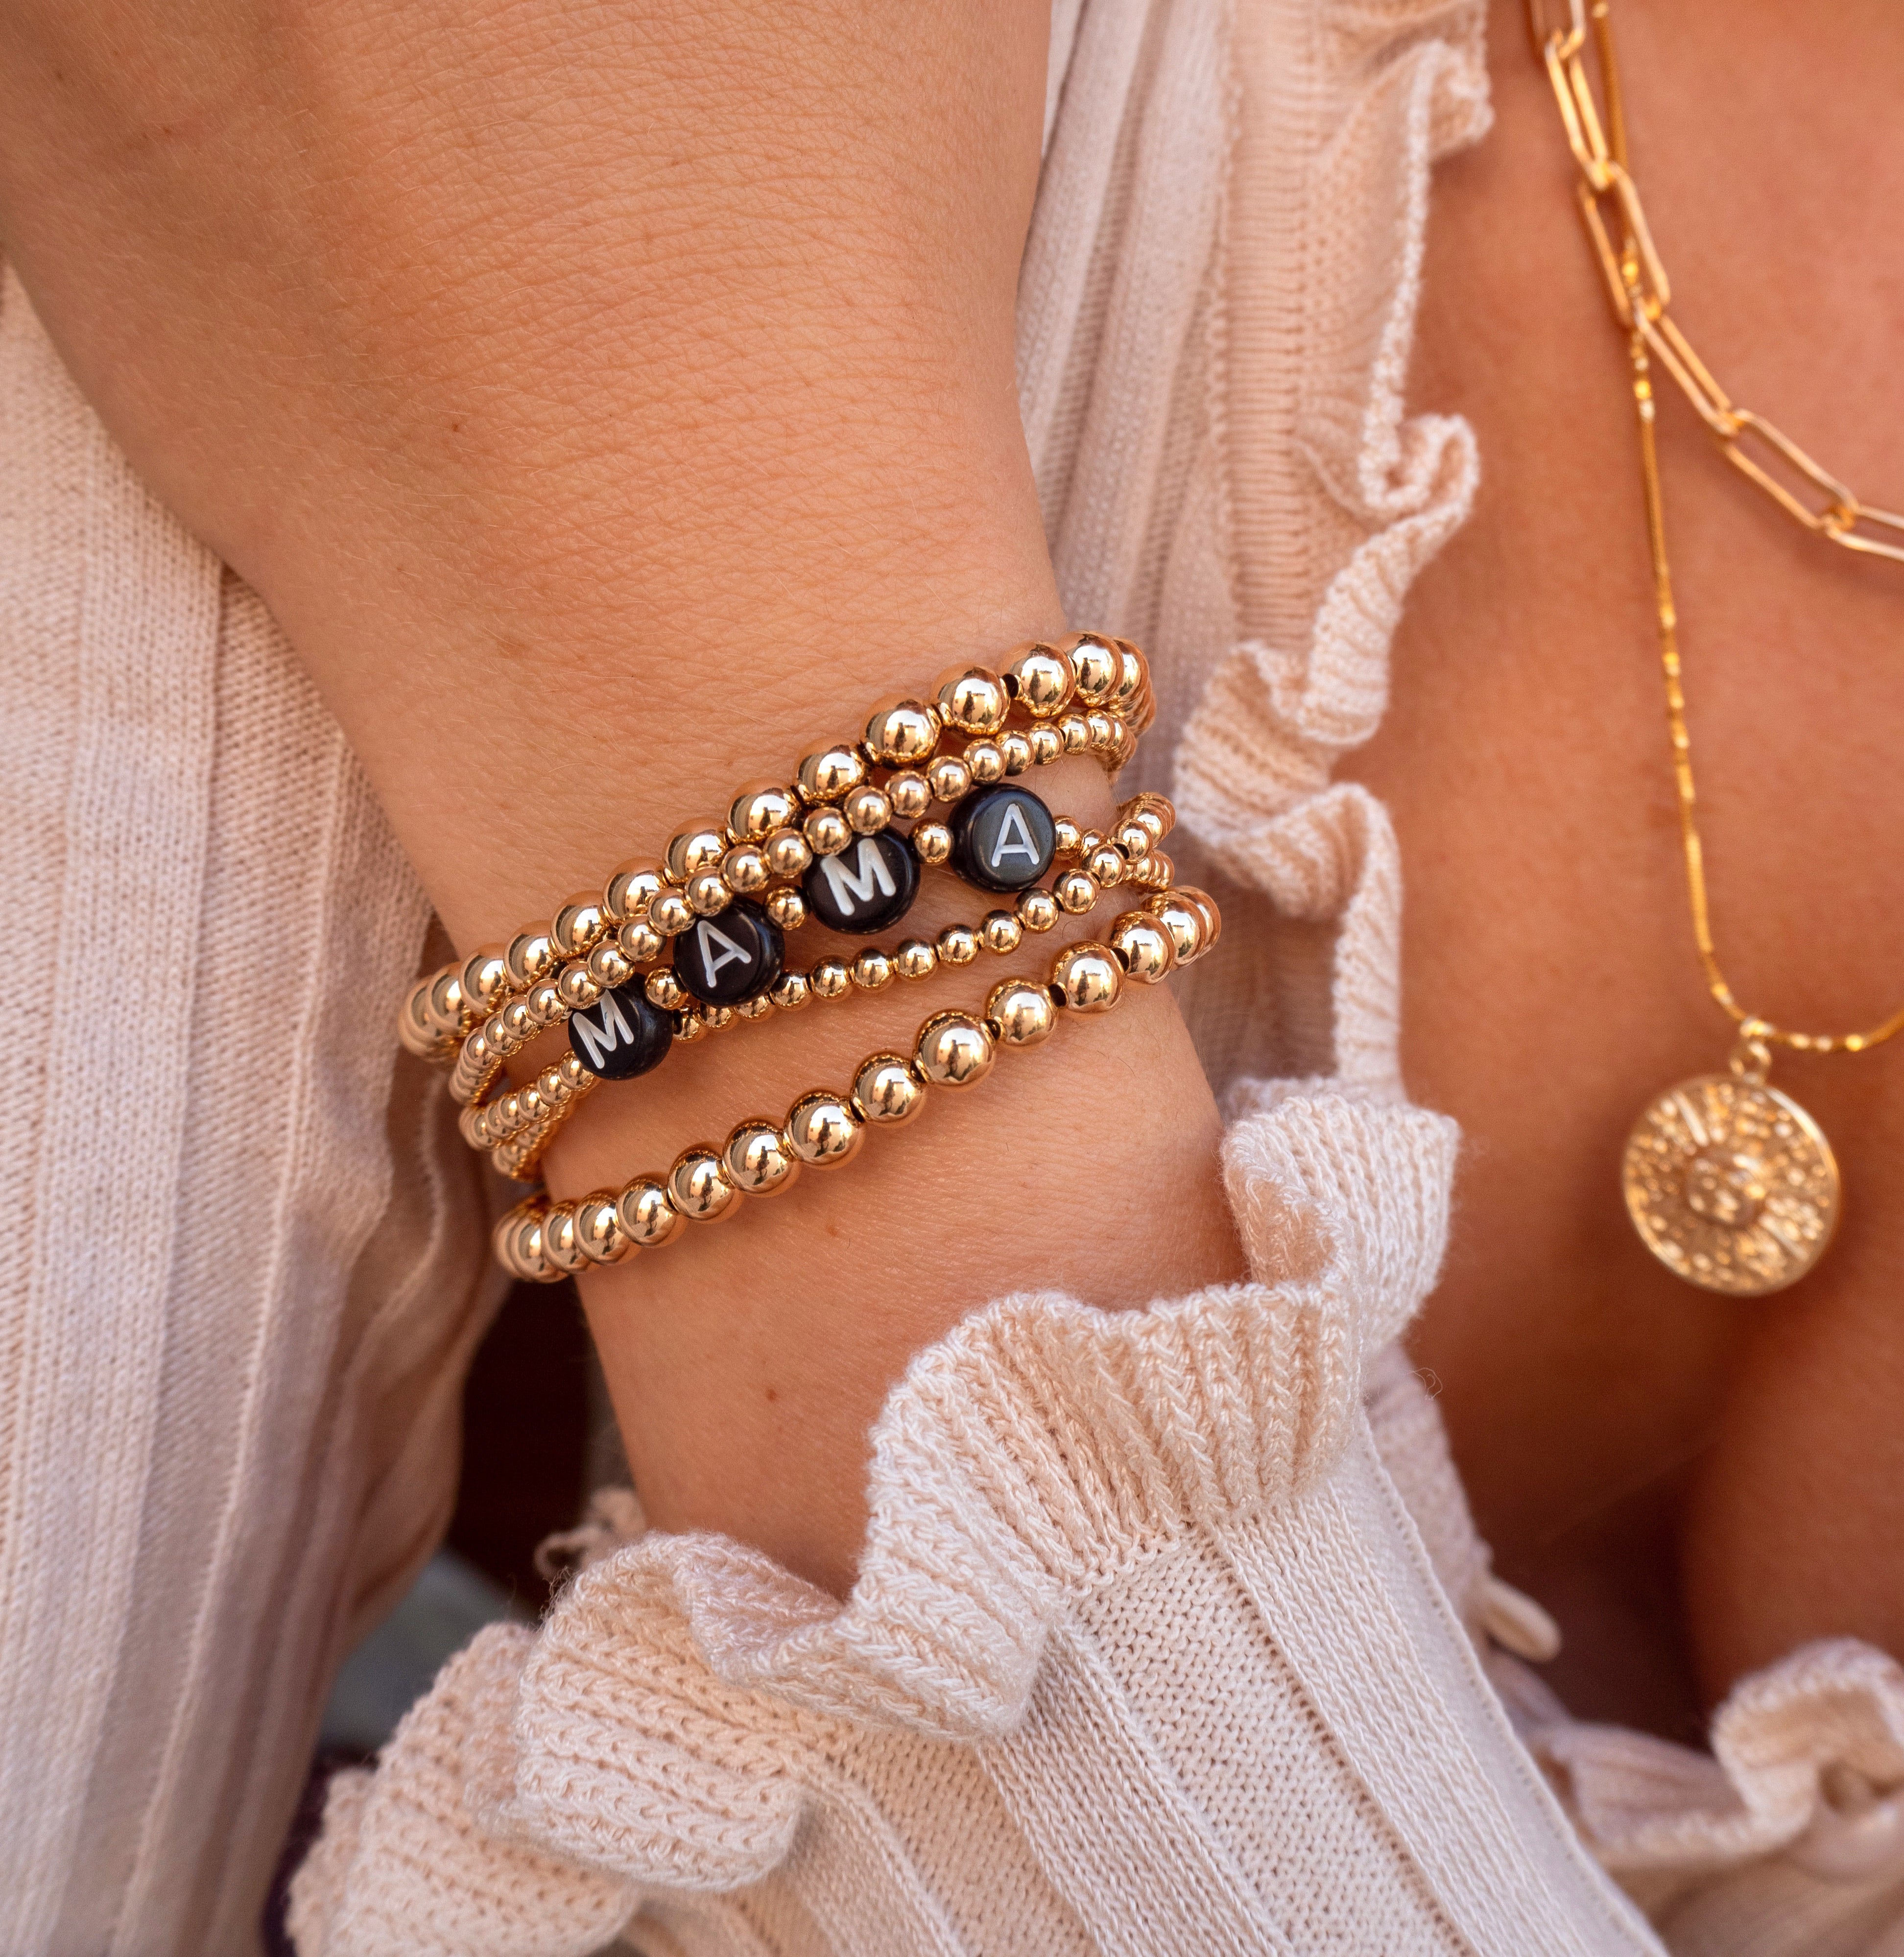 Gold Beads Bracelet  Gold earrings models, Gold bead bracelets, Beaded  bracelets